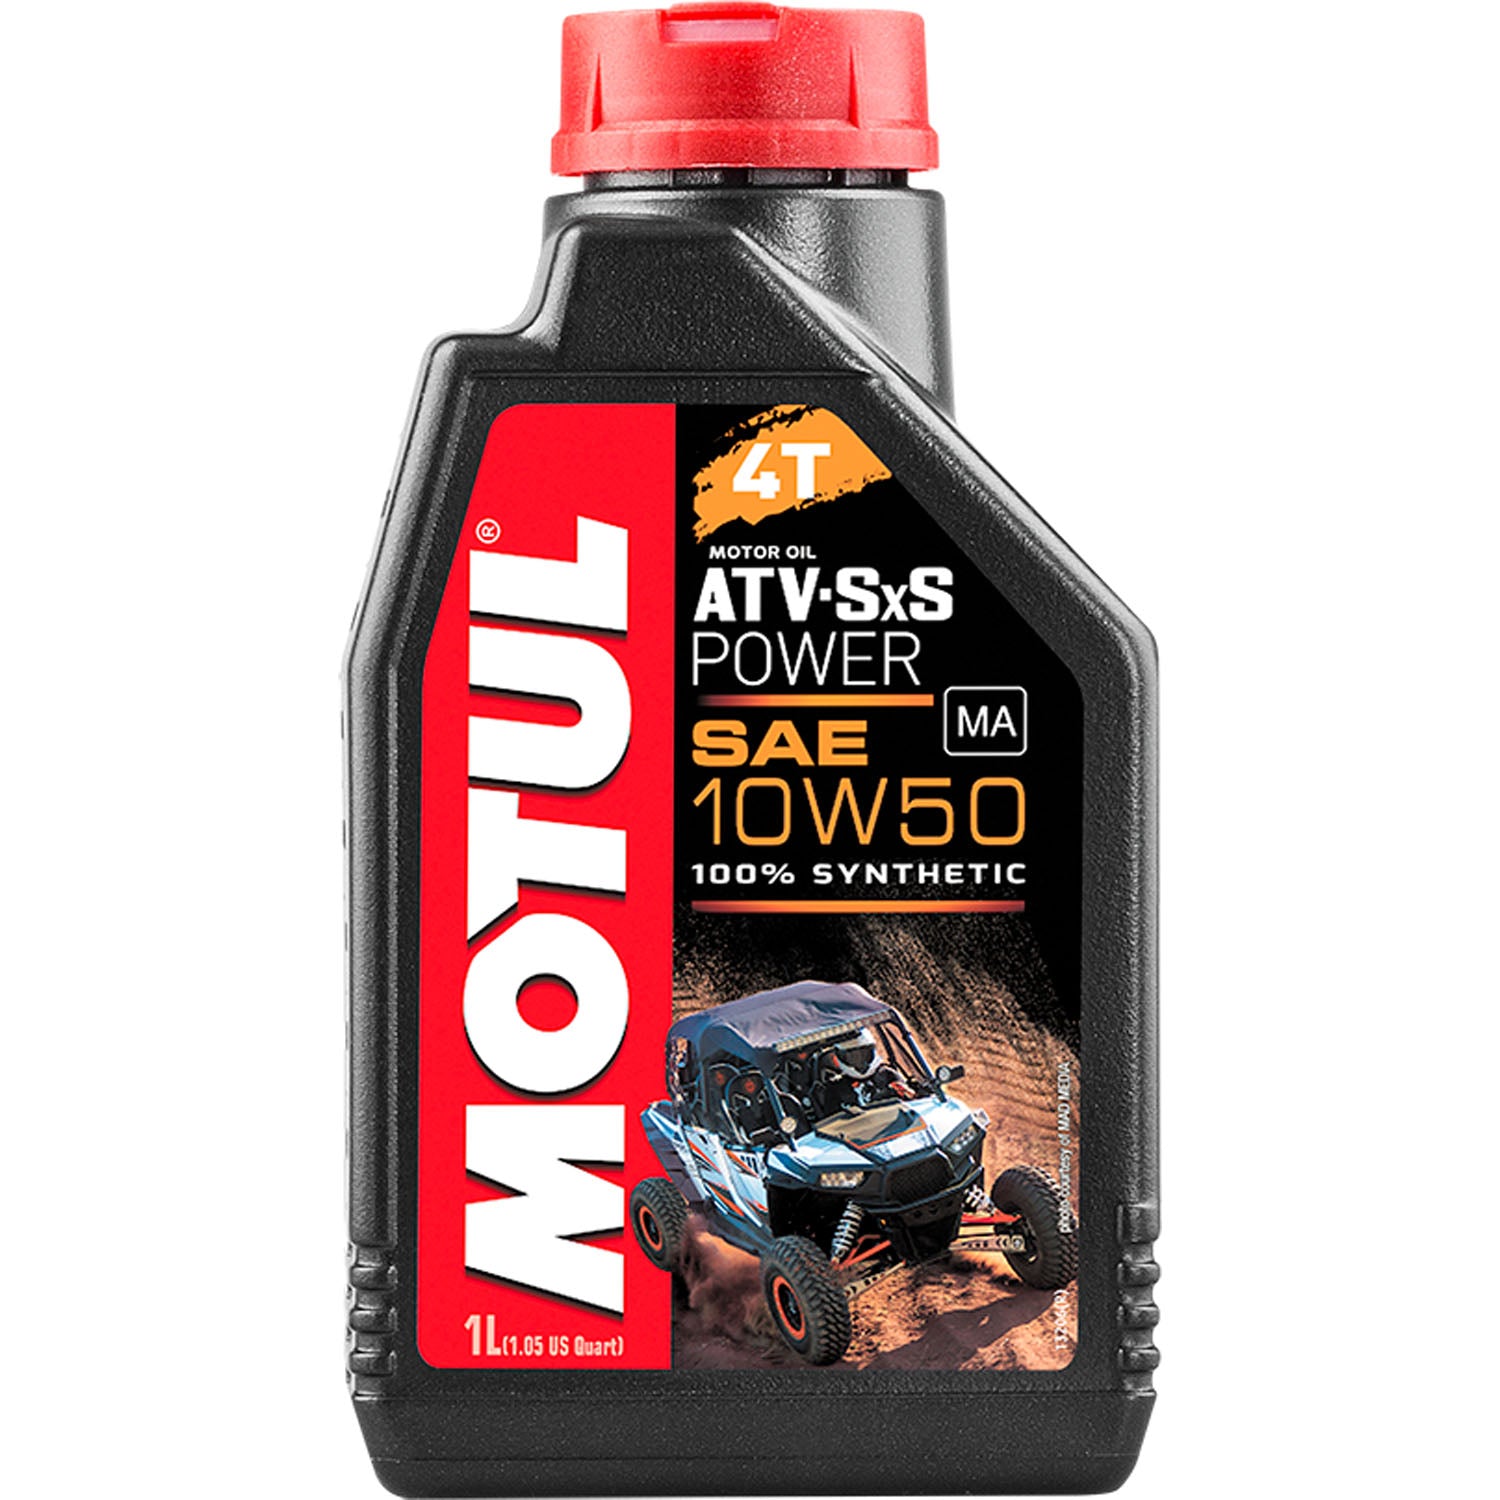 Motul ATV-SXS Power 4T Synthetic Motor Oil 10W50 - 1 Liter